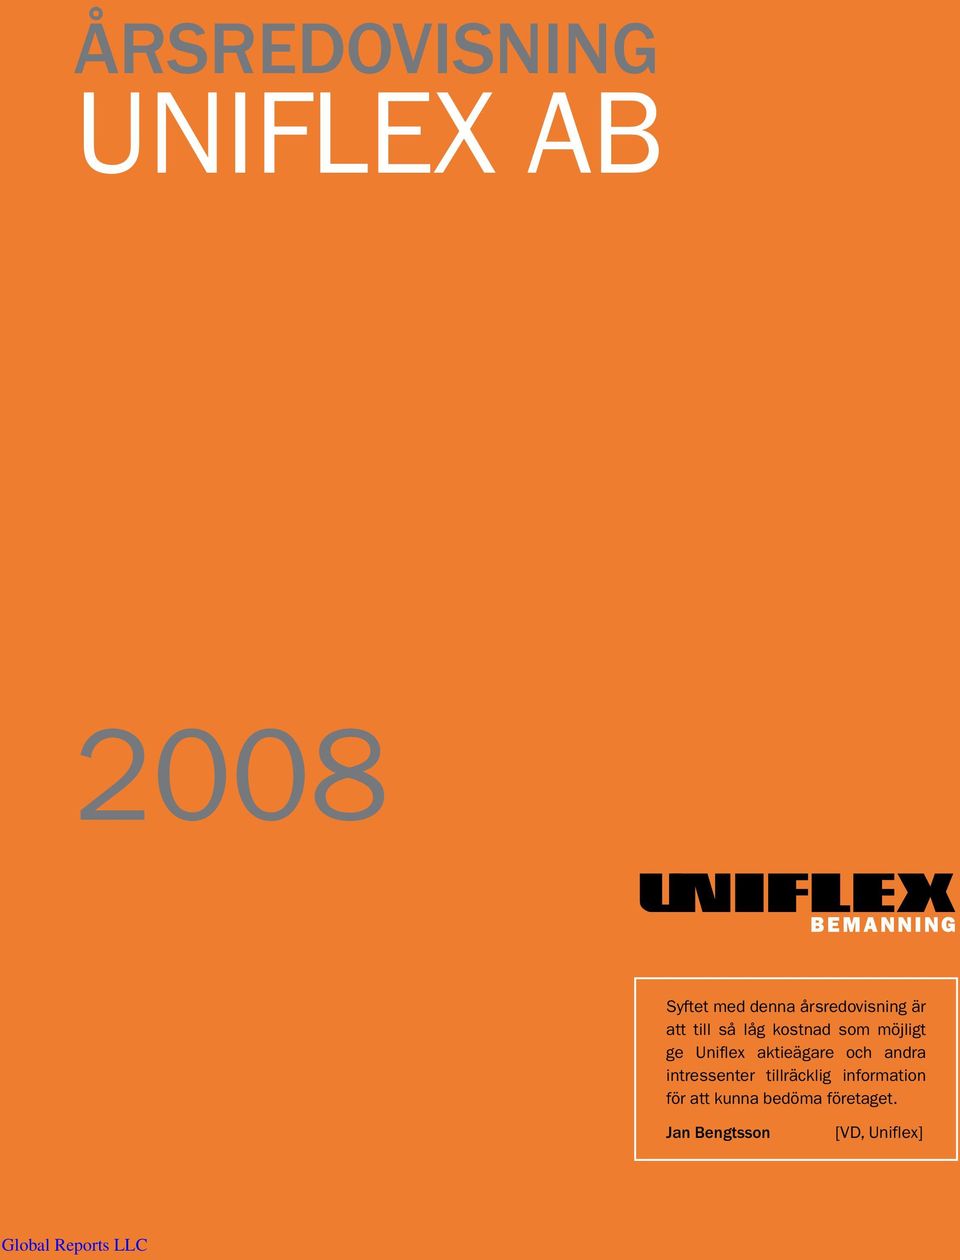 Uniflex aktieägare och andra intressenter tillräcklig